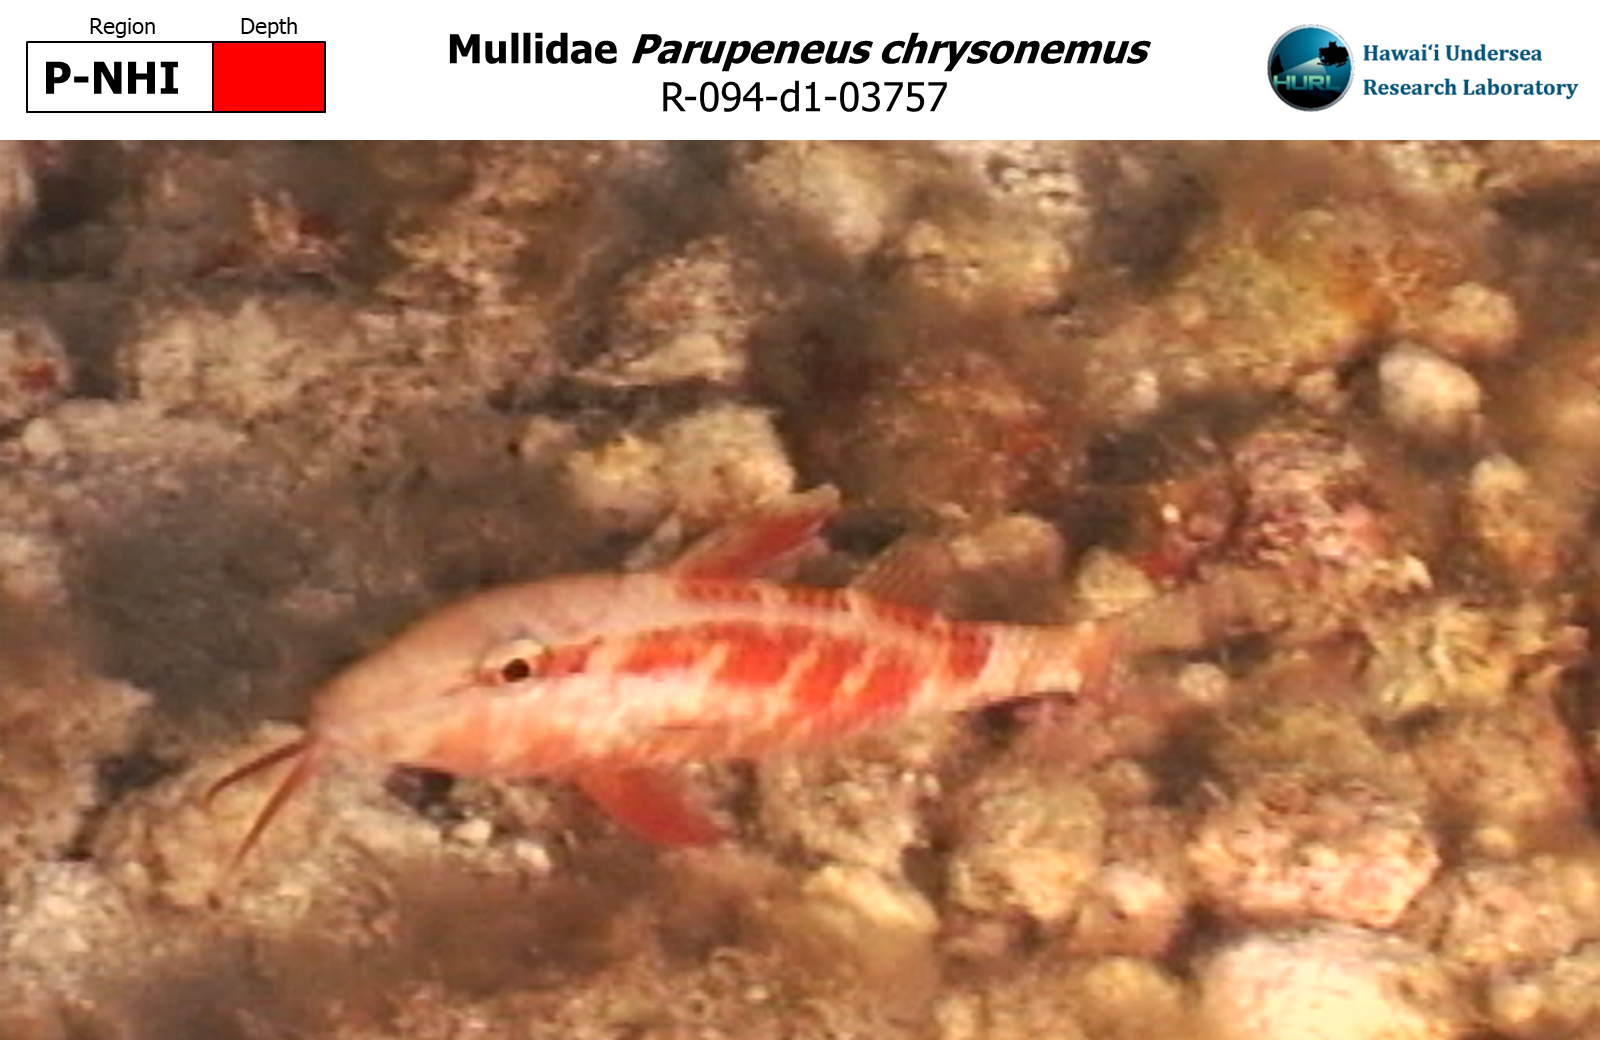 Parupeneus chrysonemus